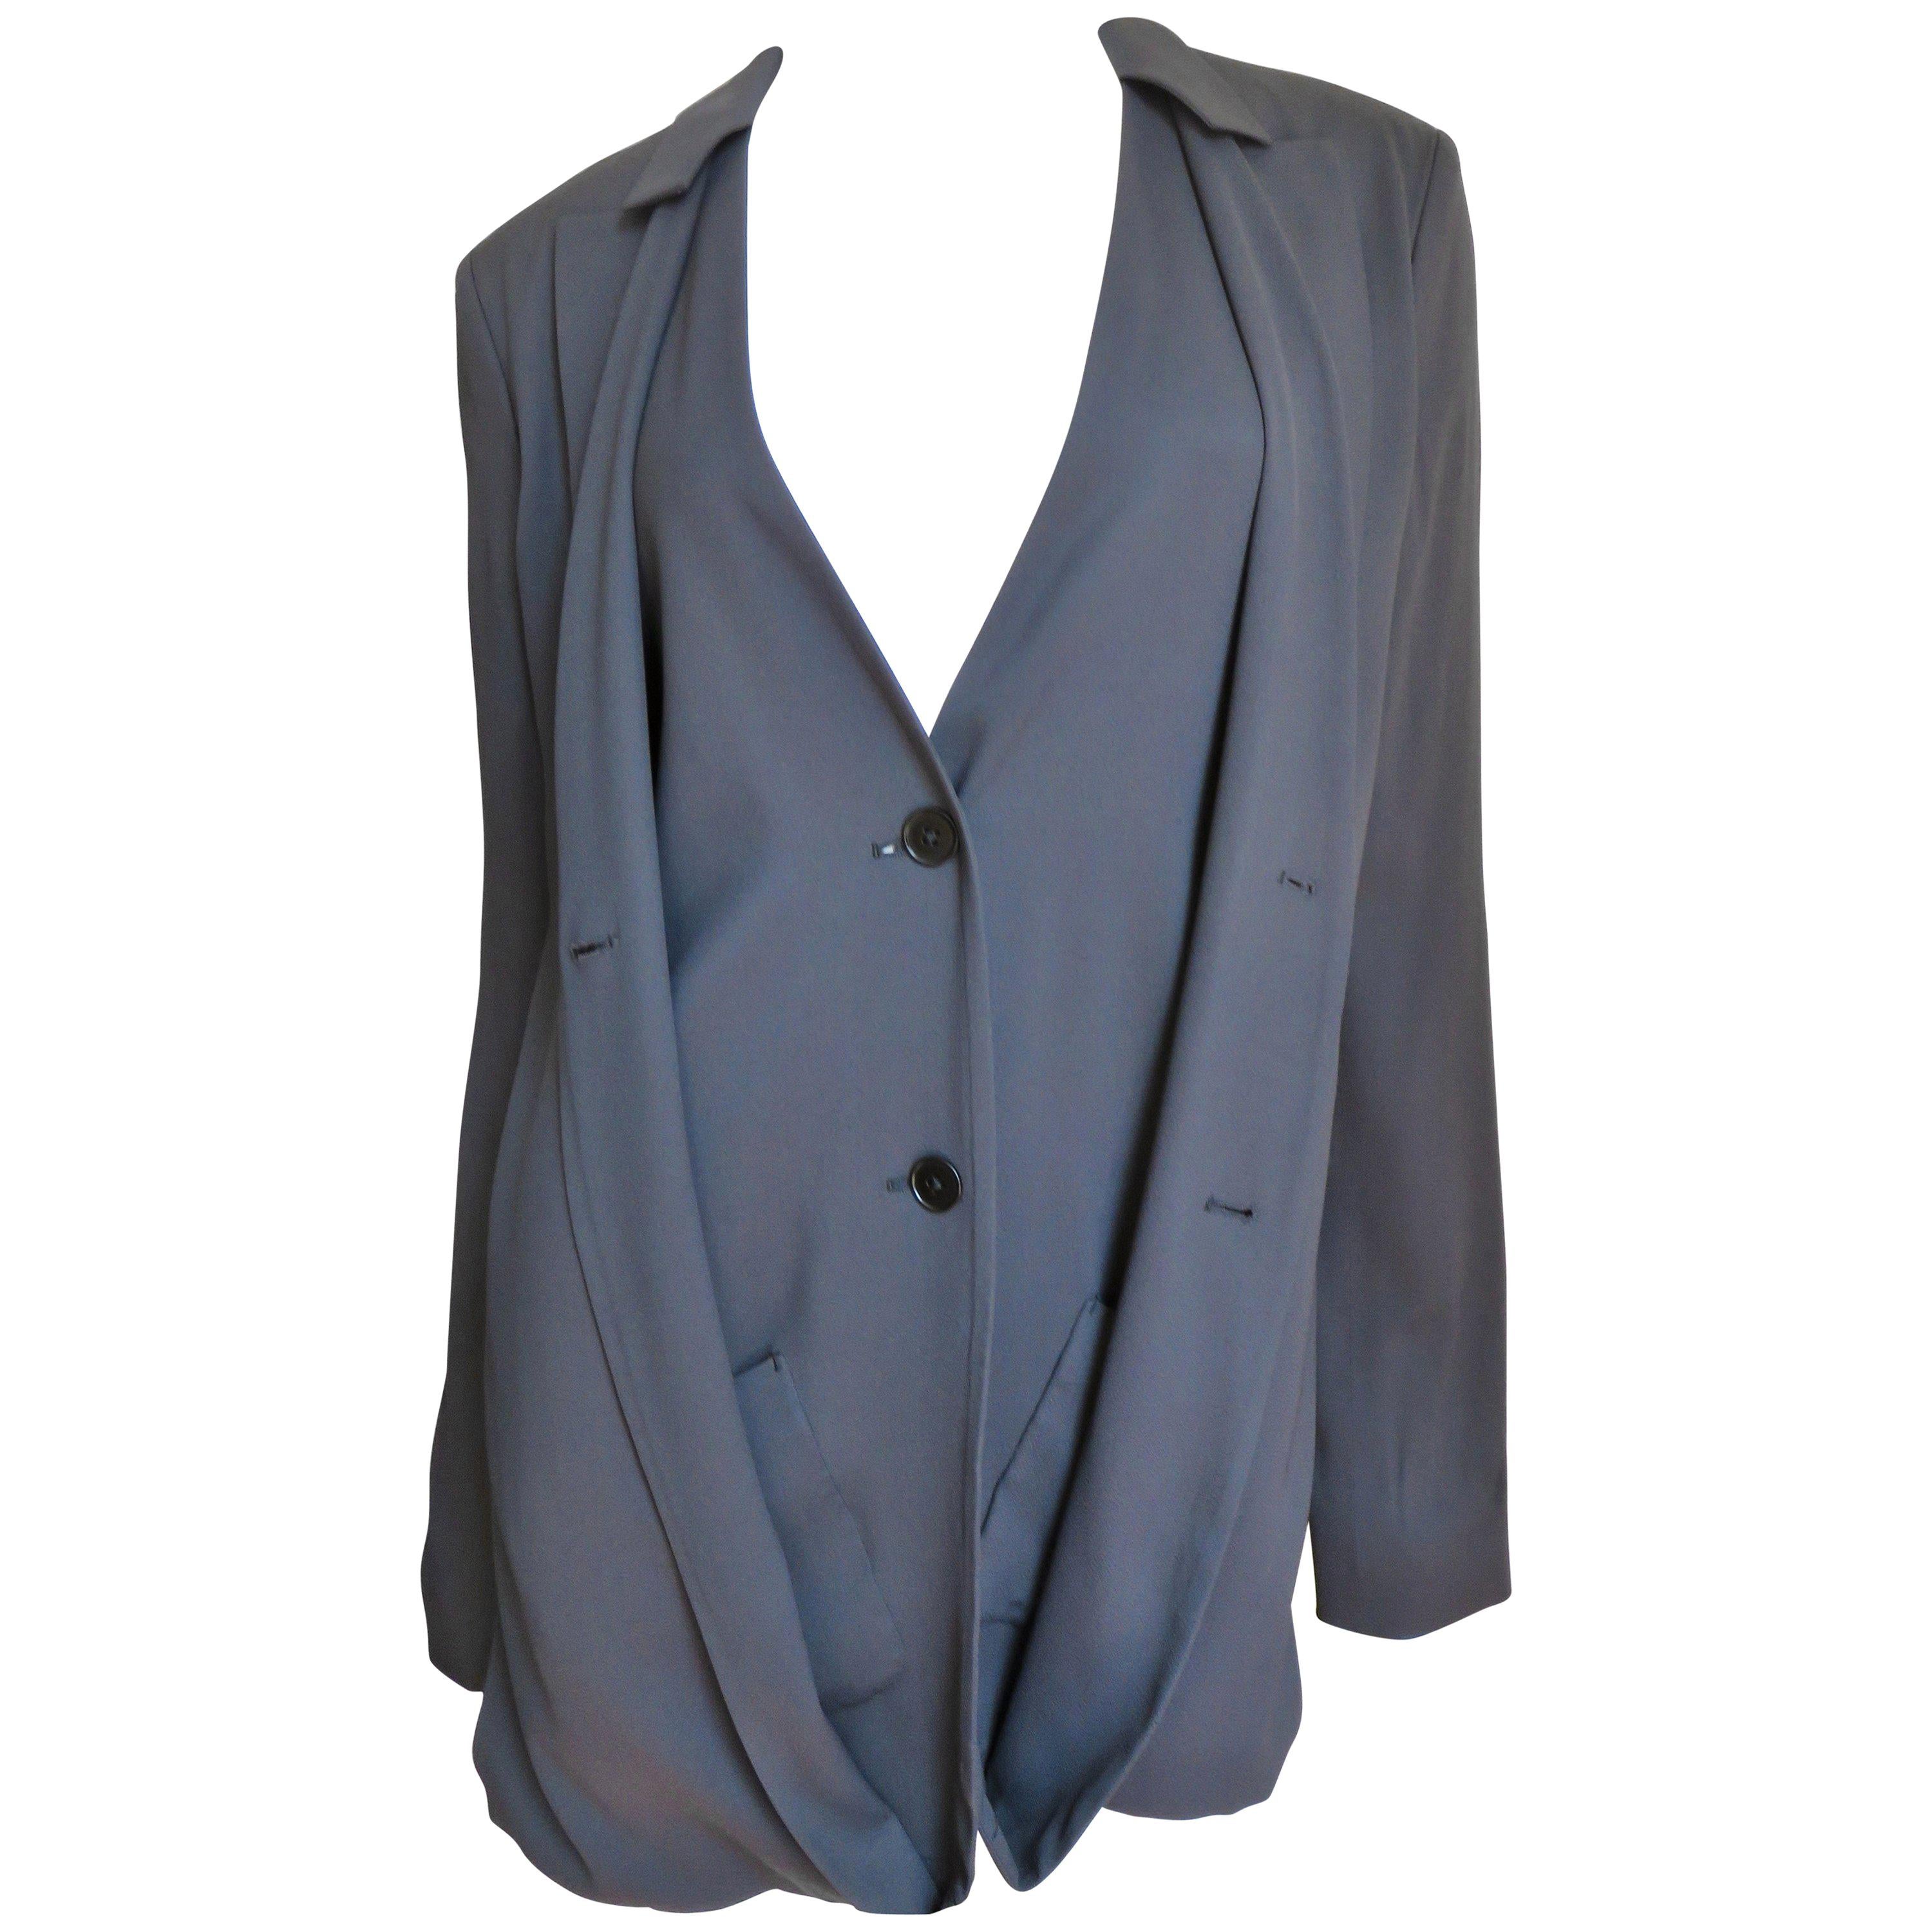 Une magnifique veste en soie gris anthracite du créateur Jil Sander.  Il a des manches longues et se présente comme un blazer lorsqu'il est boutonné sur le devant.  Le gilet est déboutonné et comporte deux boutons gris qui se ferment, des poches